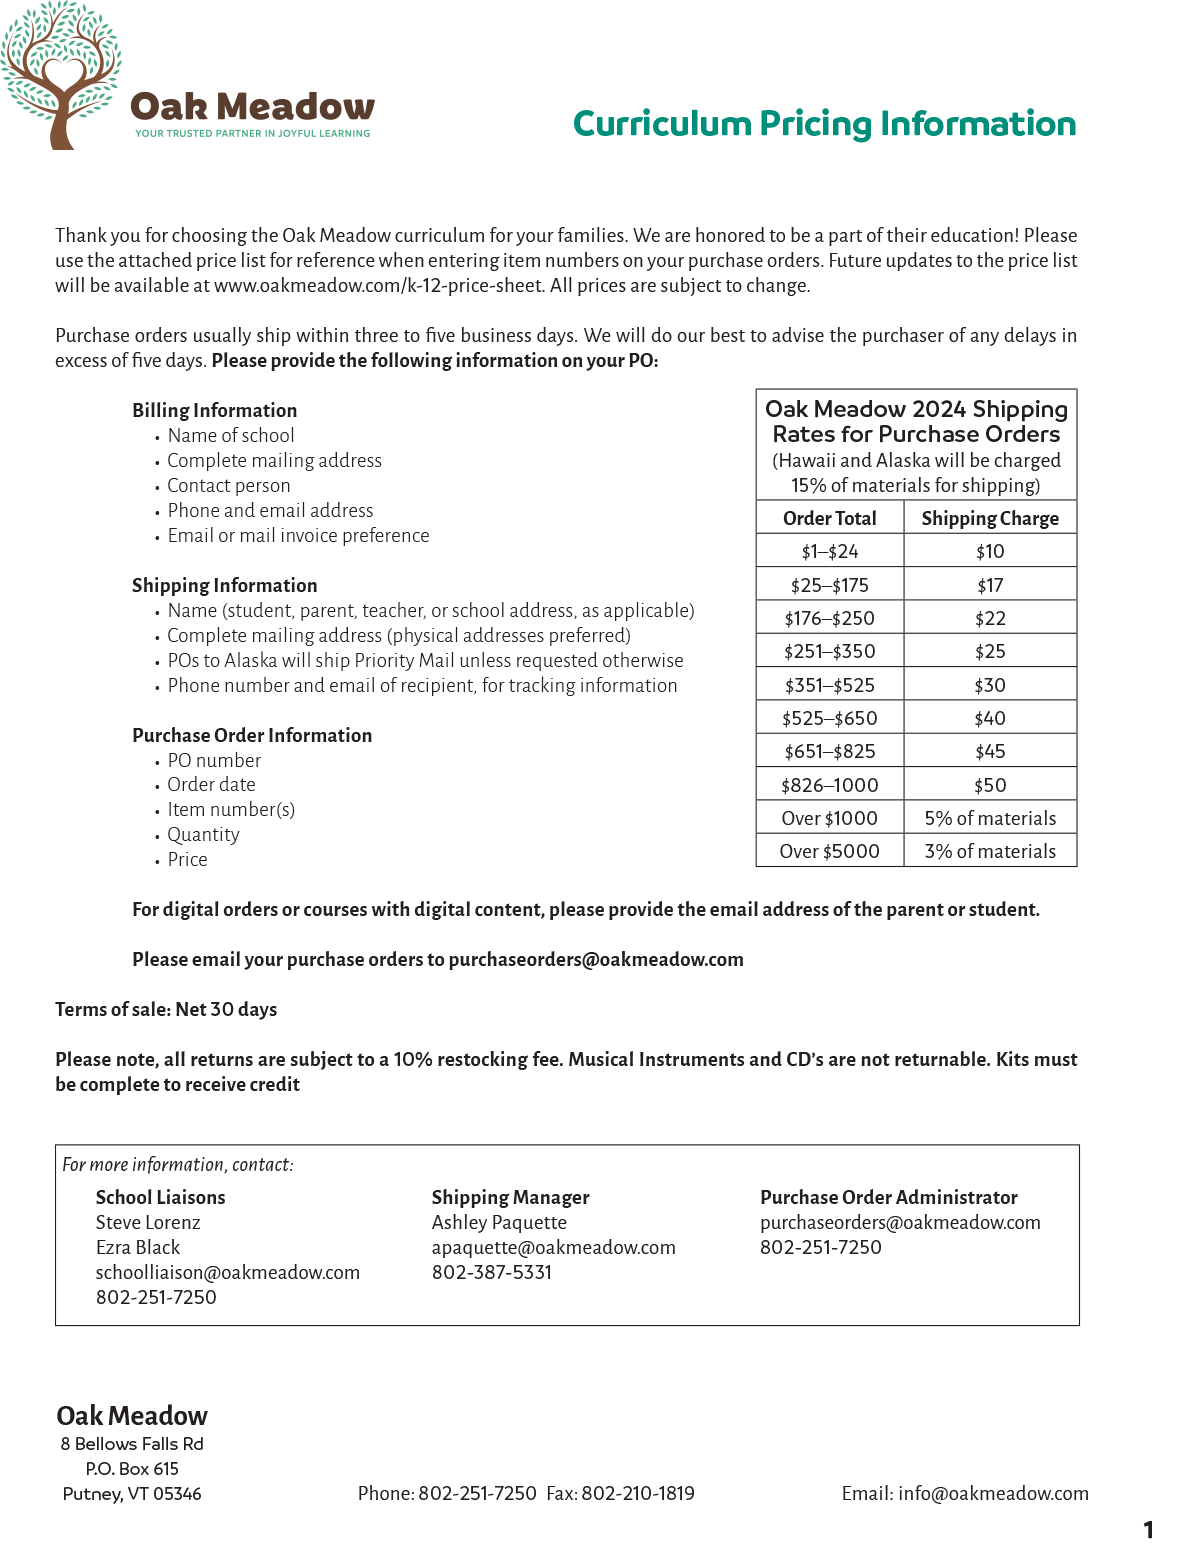 Oak Meadow Price List Sheet